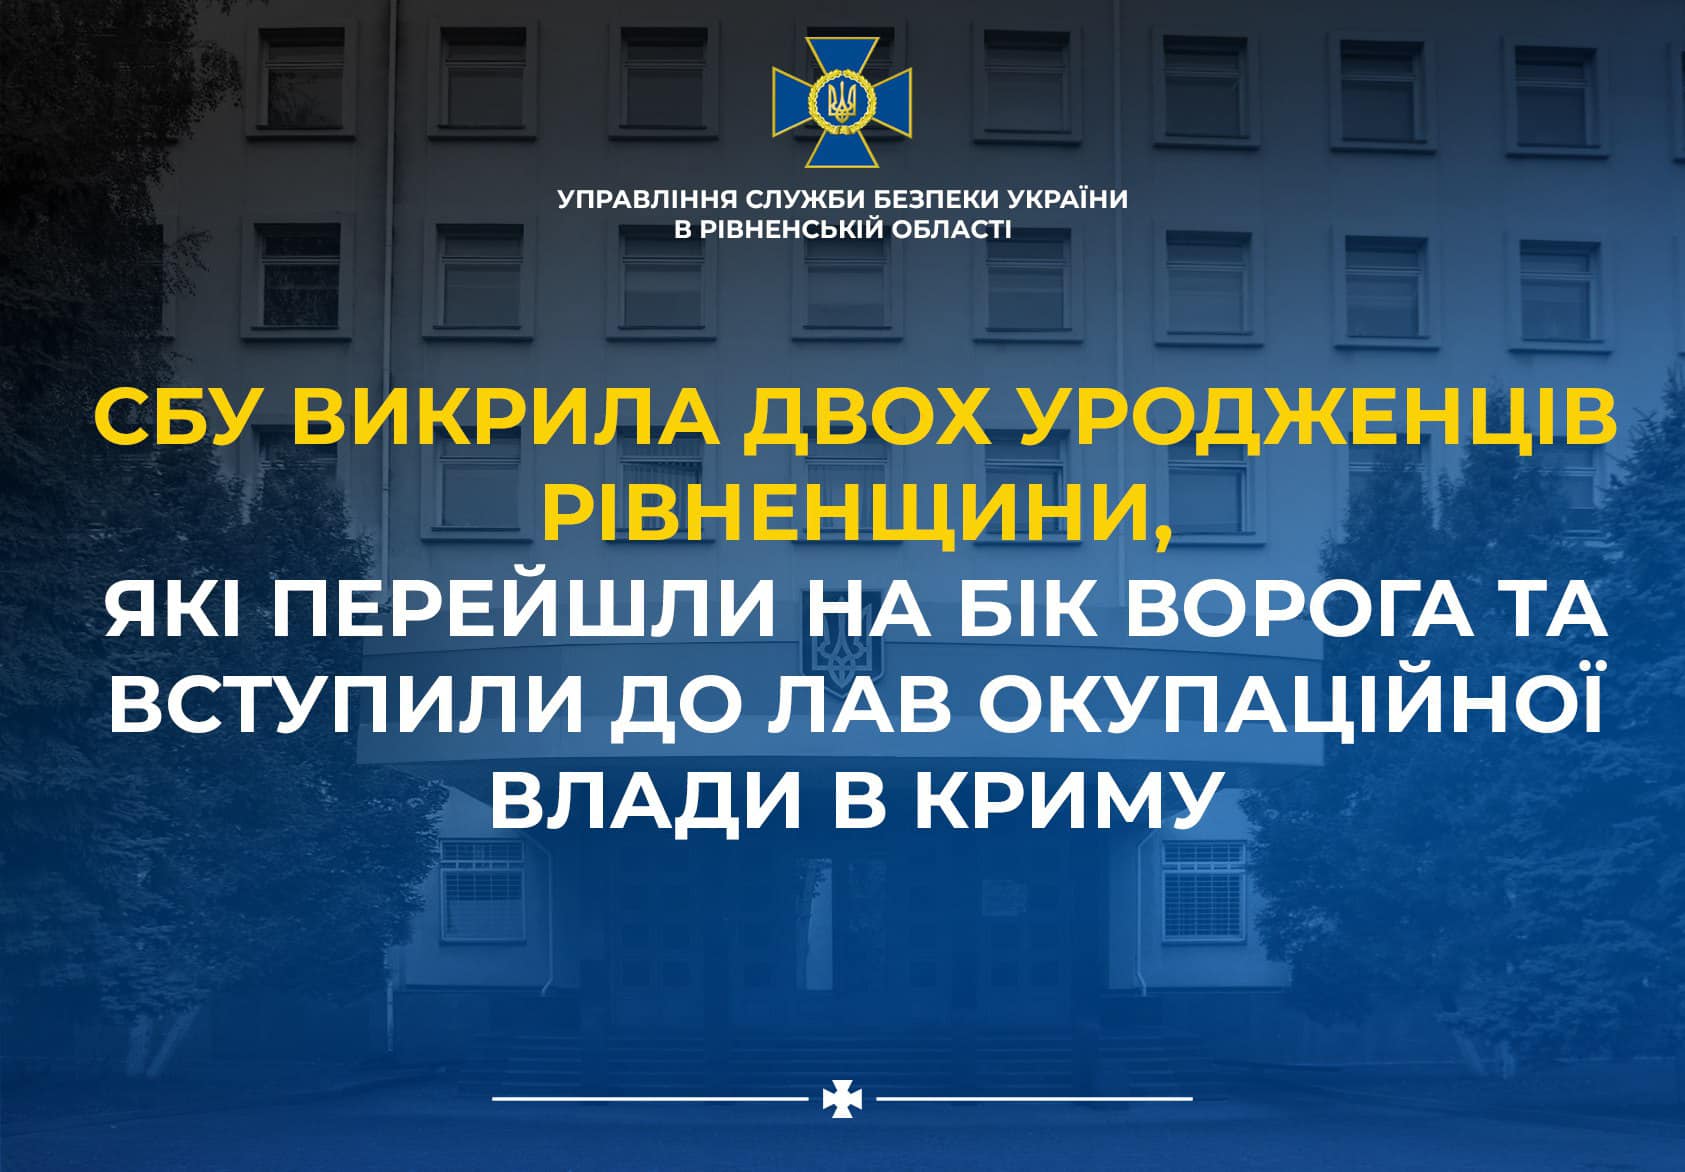 За матеріалами СБУ судитимуть двох уродженців Рівненської області, які вступили до лав окупаційної влади в Криму